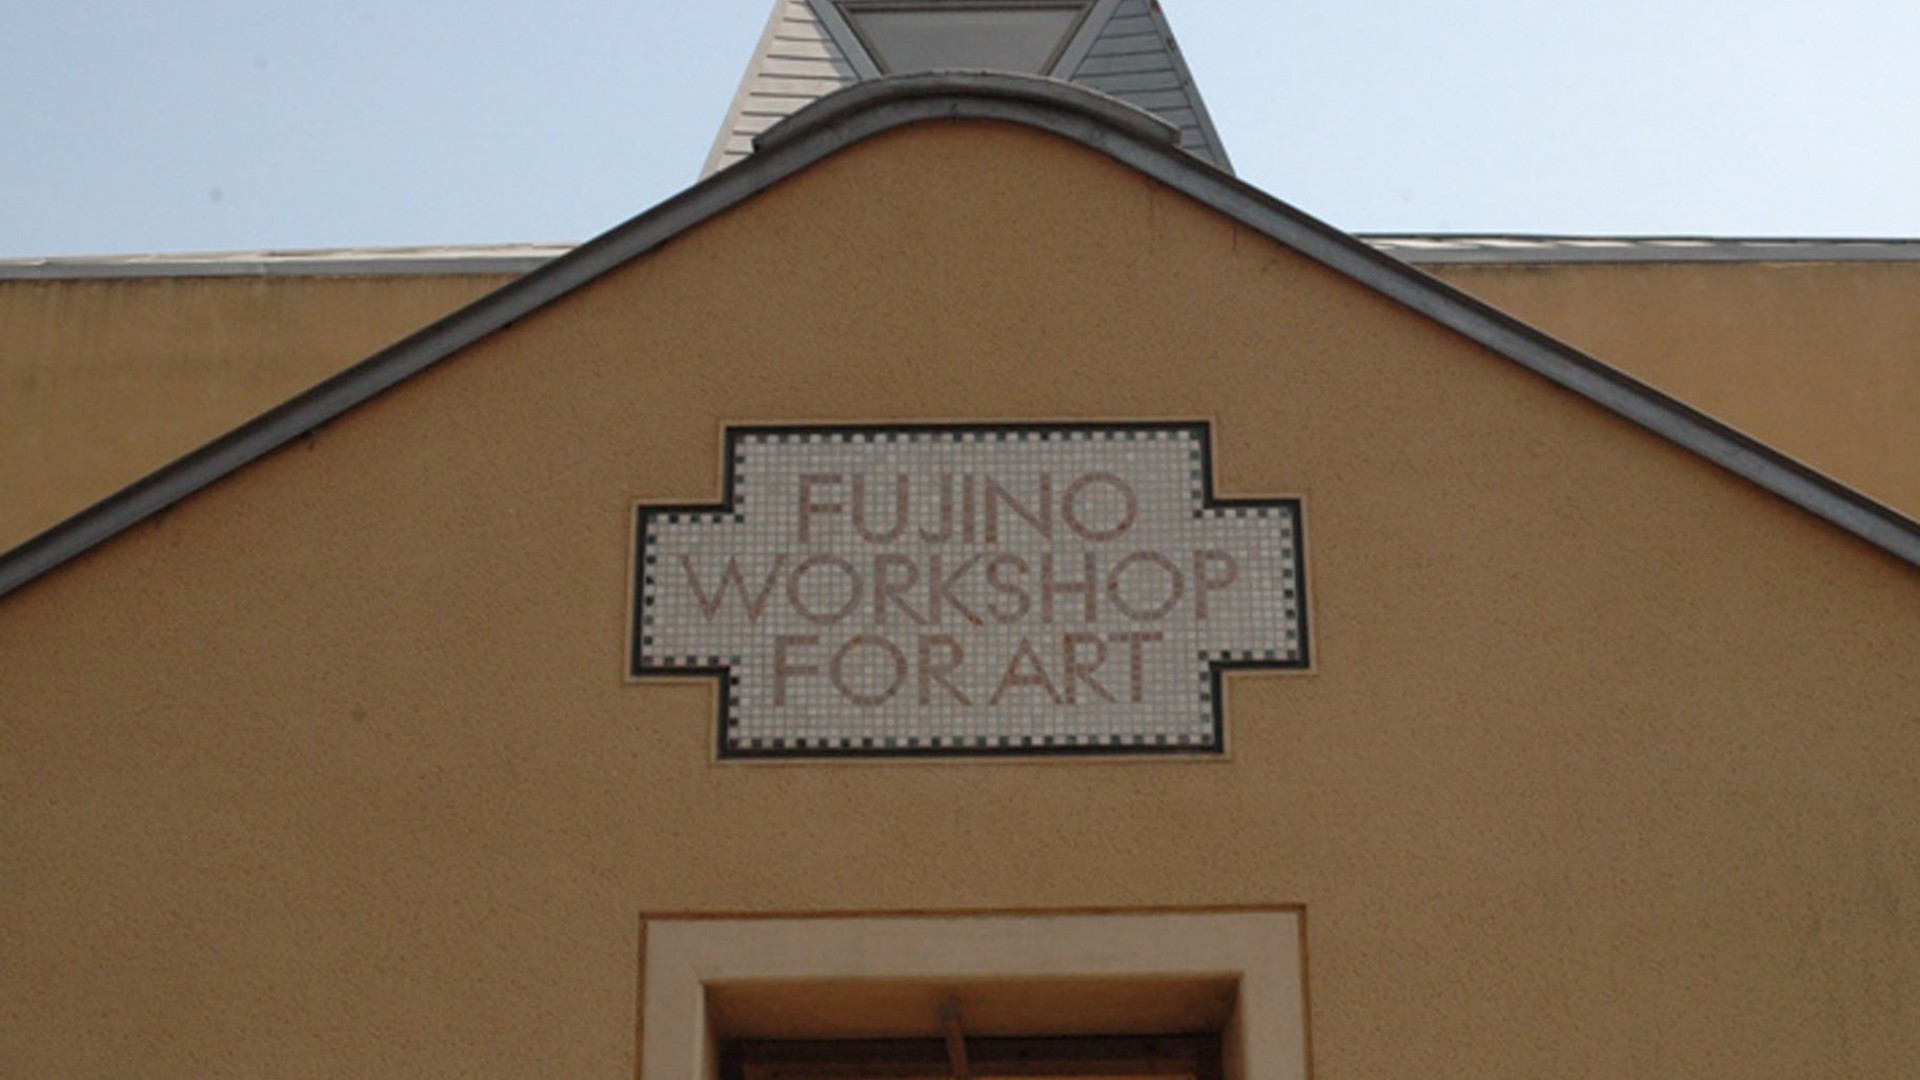 Trung tâm Nghệ thuật Fujino